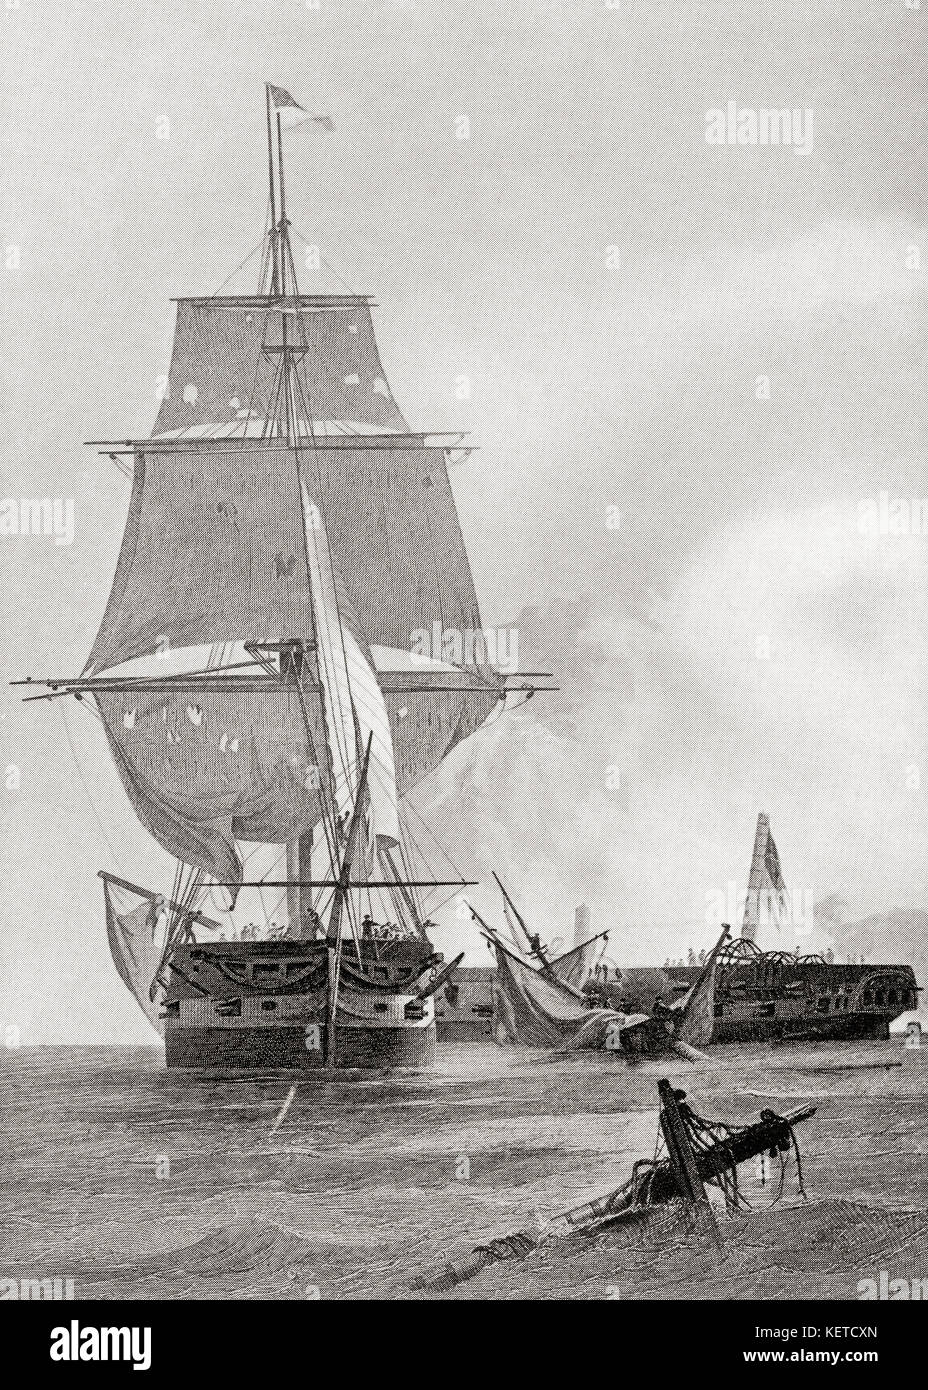 La batalla entre las dos naves USS Constitution y hms guerriere durante la guerra de 1812. La historia de Hutchinson de las naciones, publicado en 1915. Foto de stock